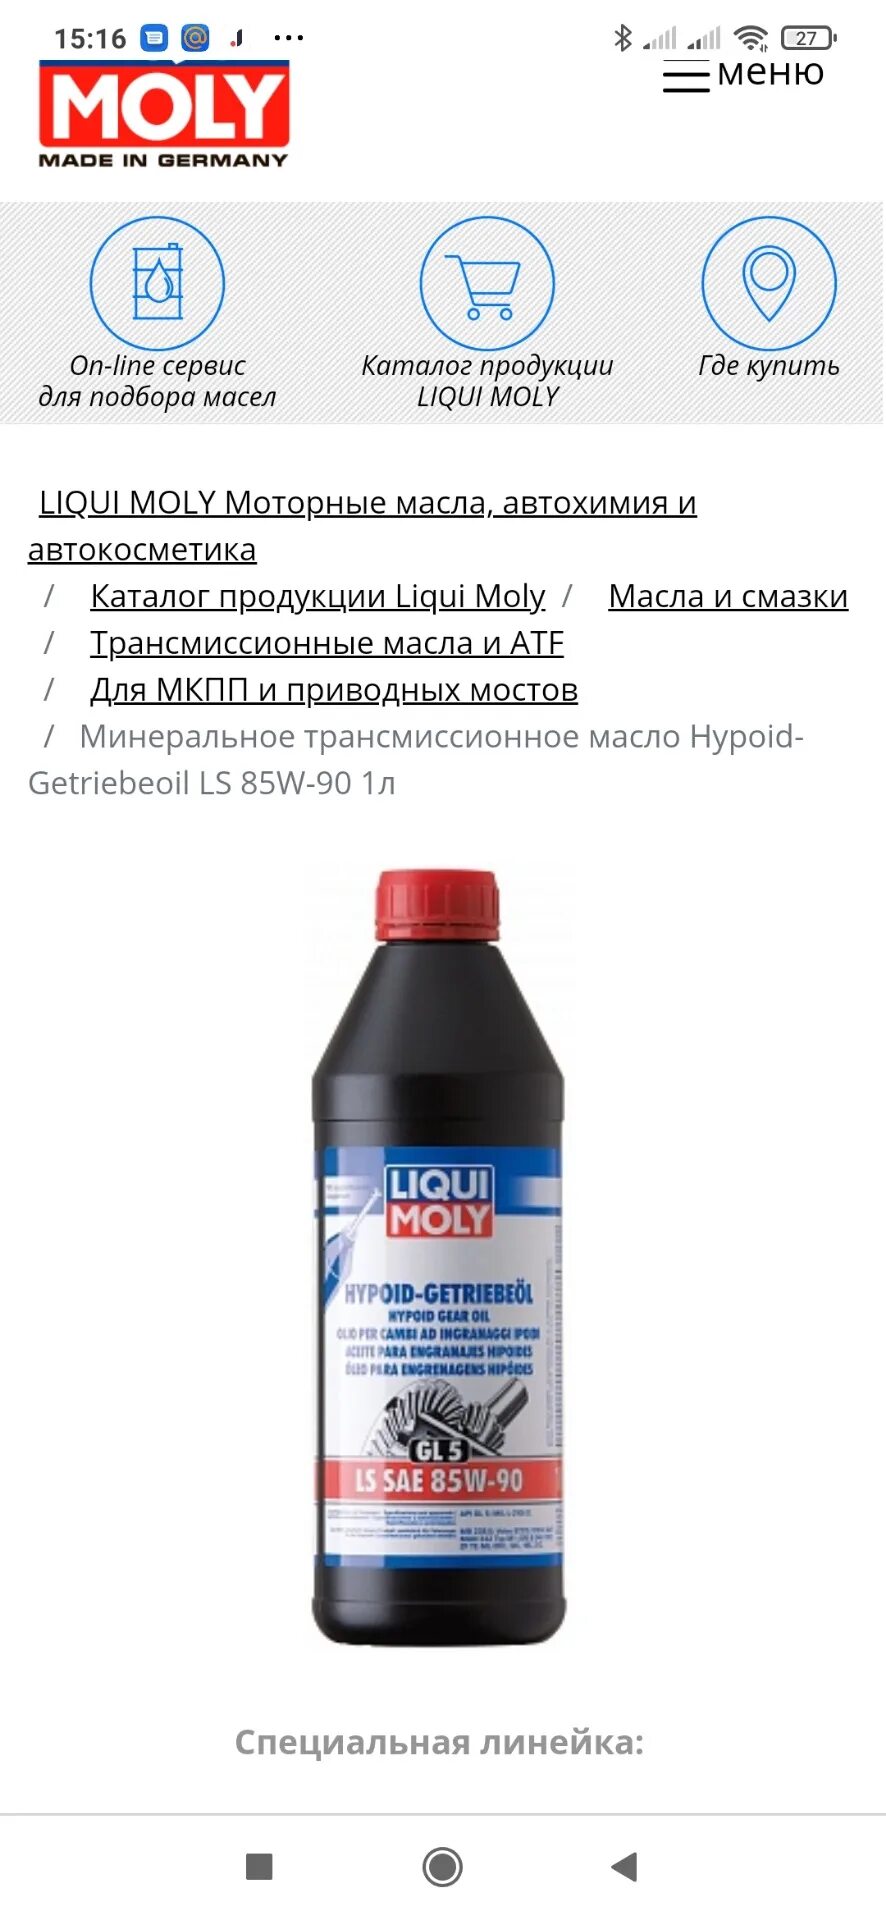 Трансмиссионное масло Liqui Moly 1956 Hypoid-Getriebeoil SAE 85w90 1 л. Трансмиссионное масло gl4 Ликви моли 75w85. Hypoid-Getriebeoil LS 85w-90 gl-5. Ликви моли 85w90 gl-5.